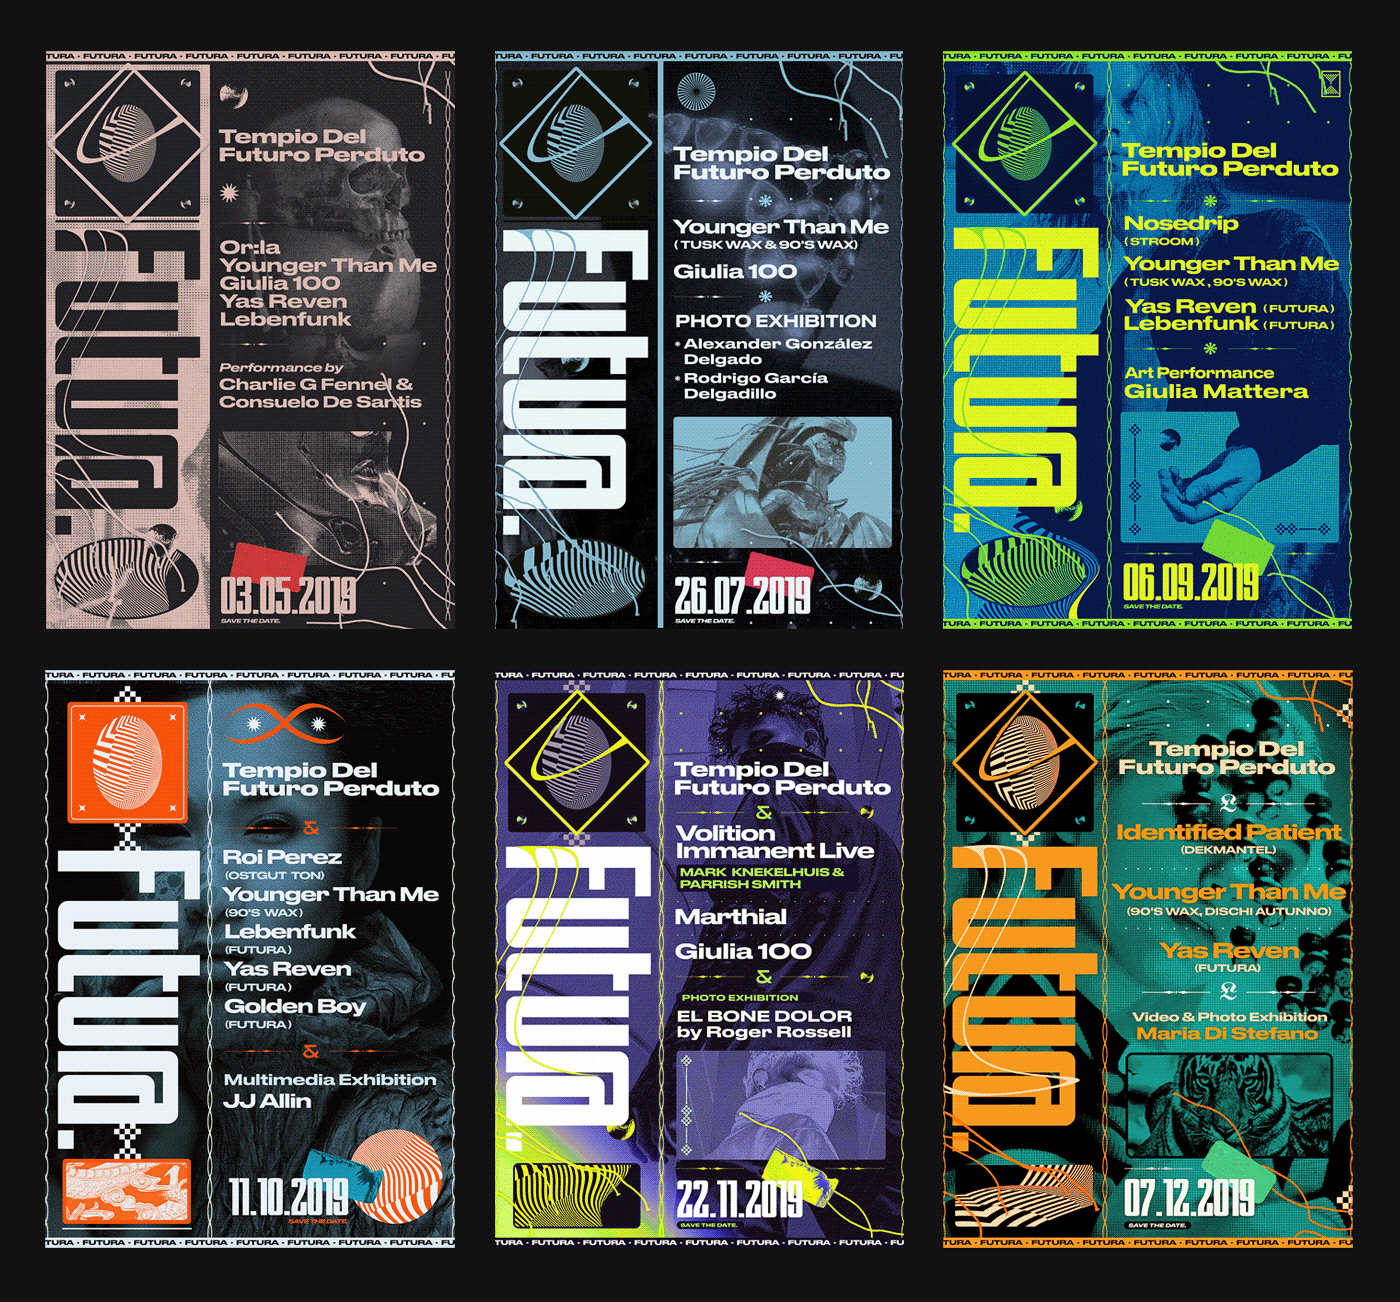 poster flyer Digital Art  event flyer industrial techno Cyberpunk dark futuristic underground